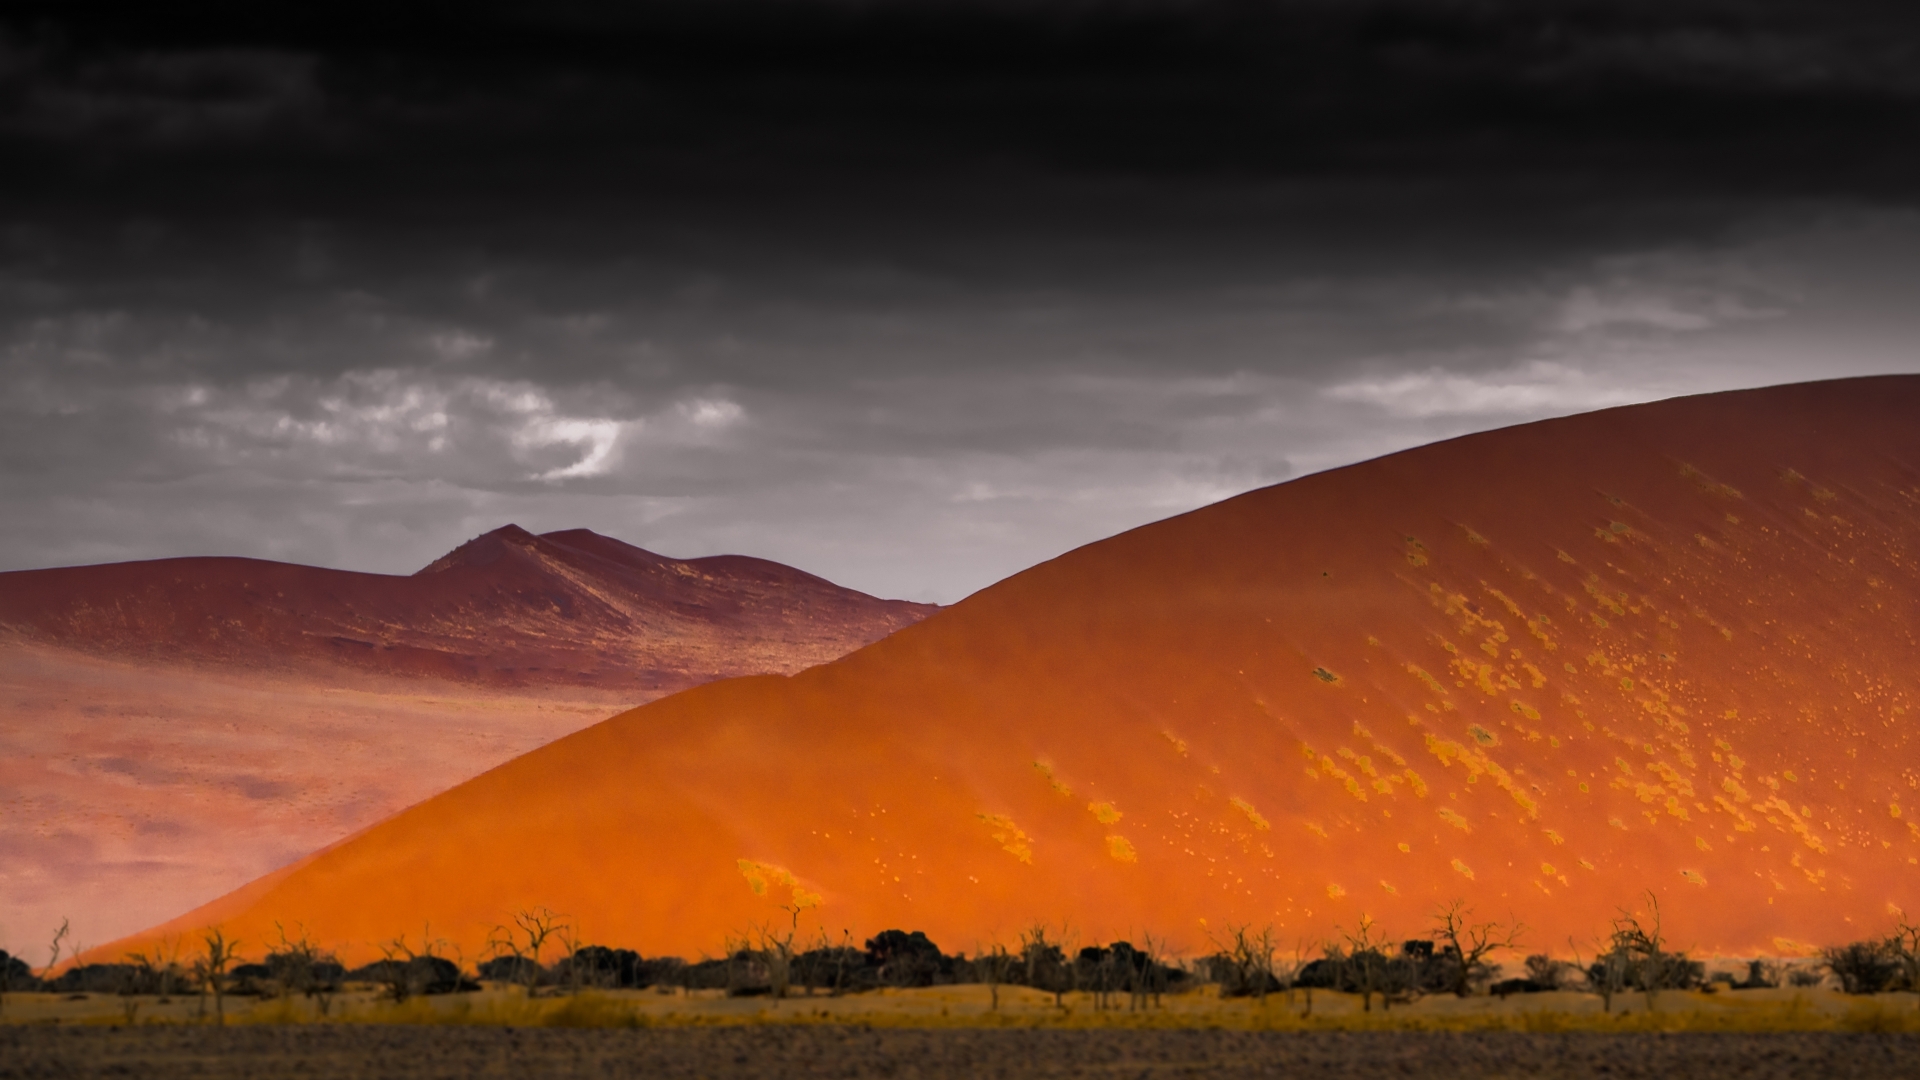 Atacama Desert for 1920 x 1080 HDTV 1080p resolution